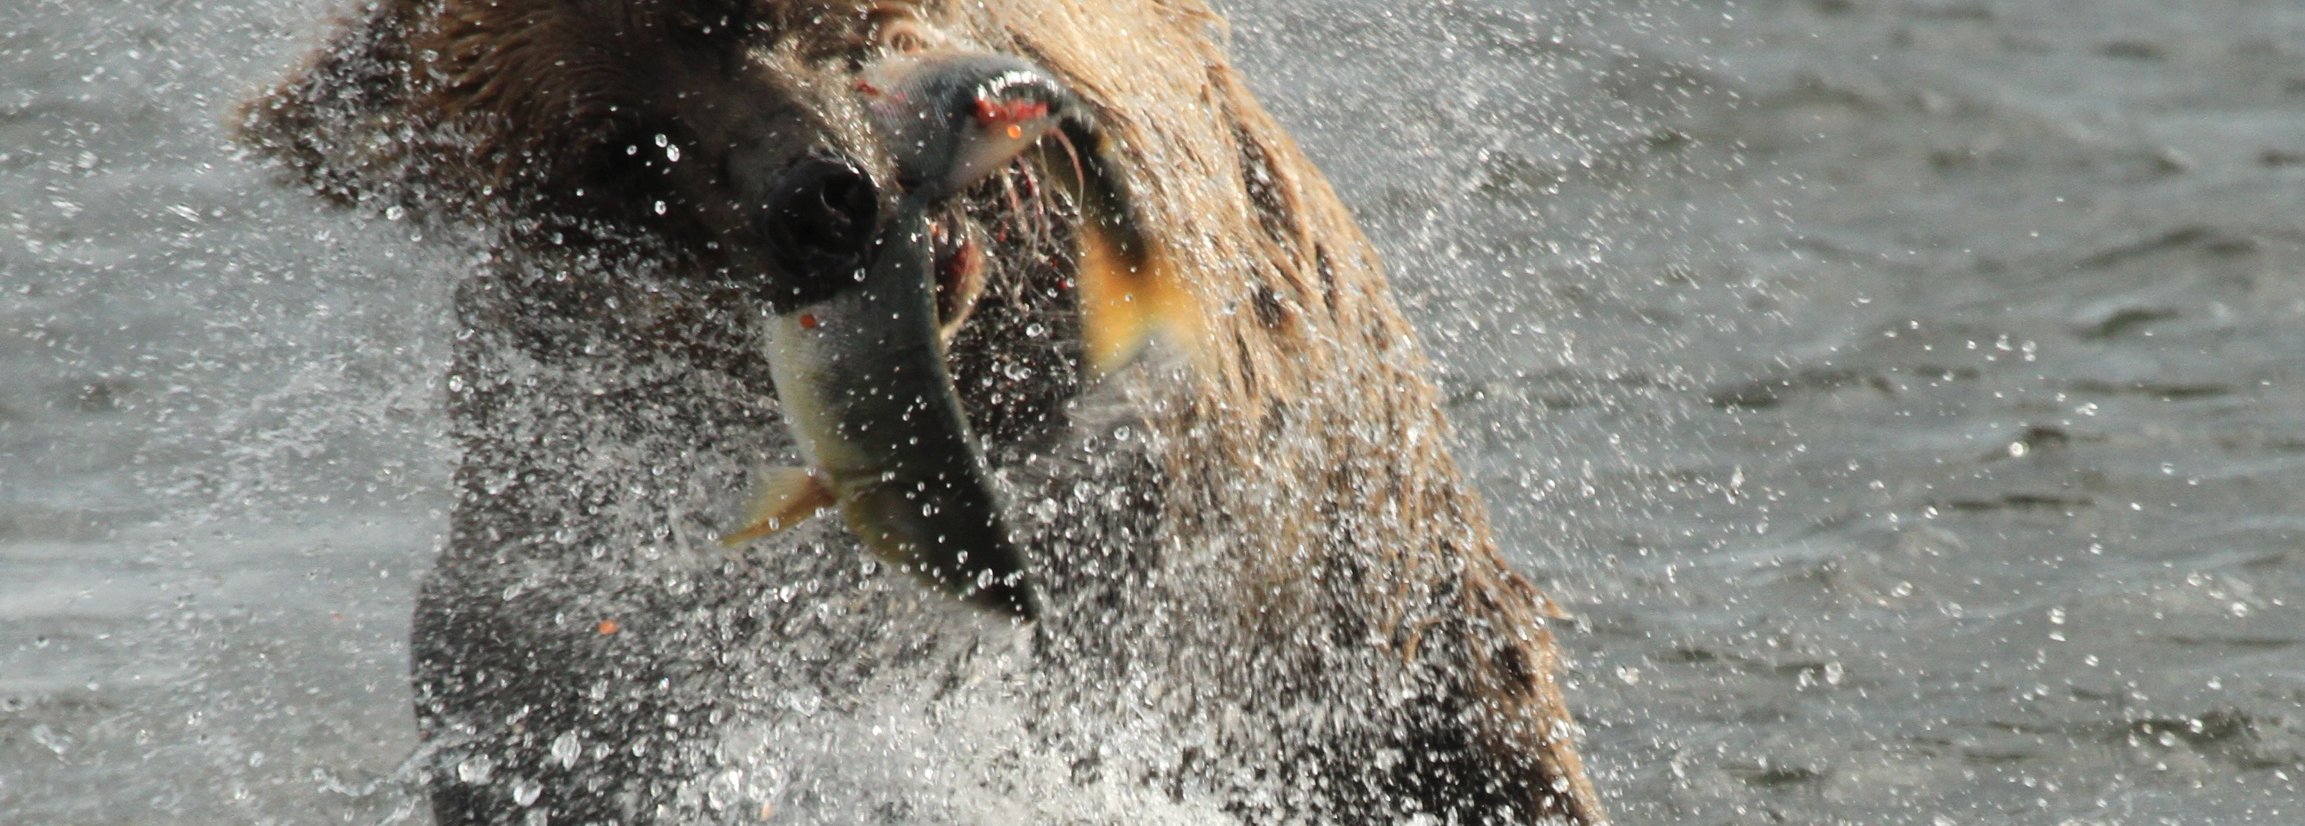 Kanada mit Kindern - Gründe nach Kanada zu reisen - Grizzlybär fängt Fisch